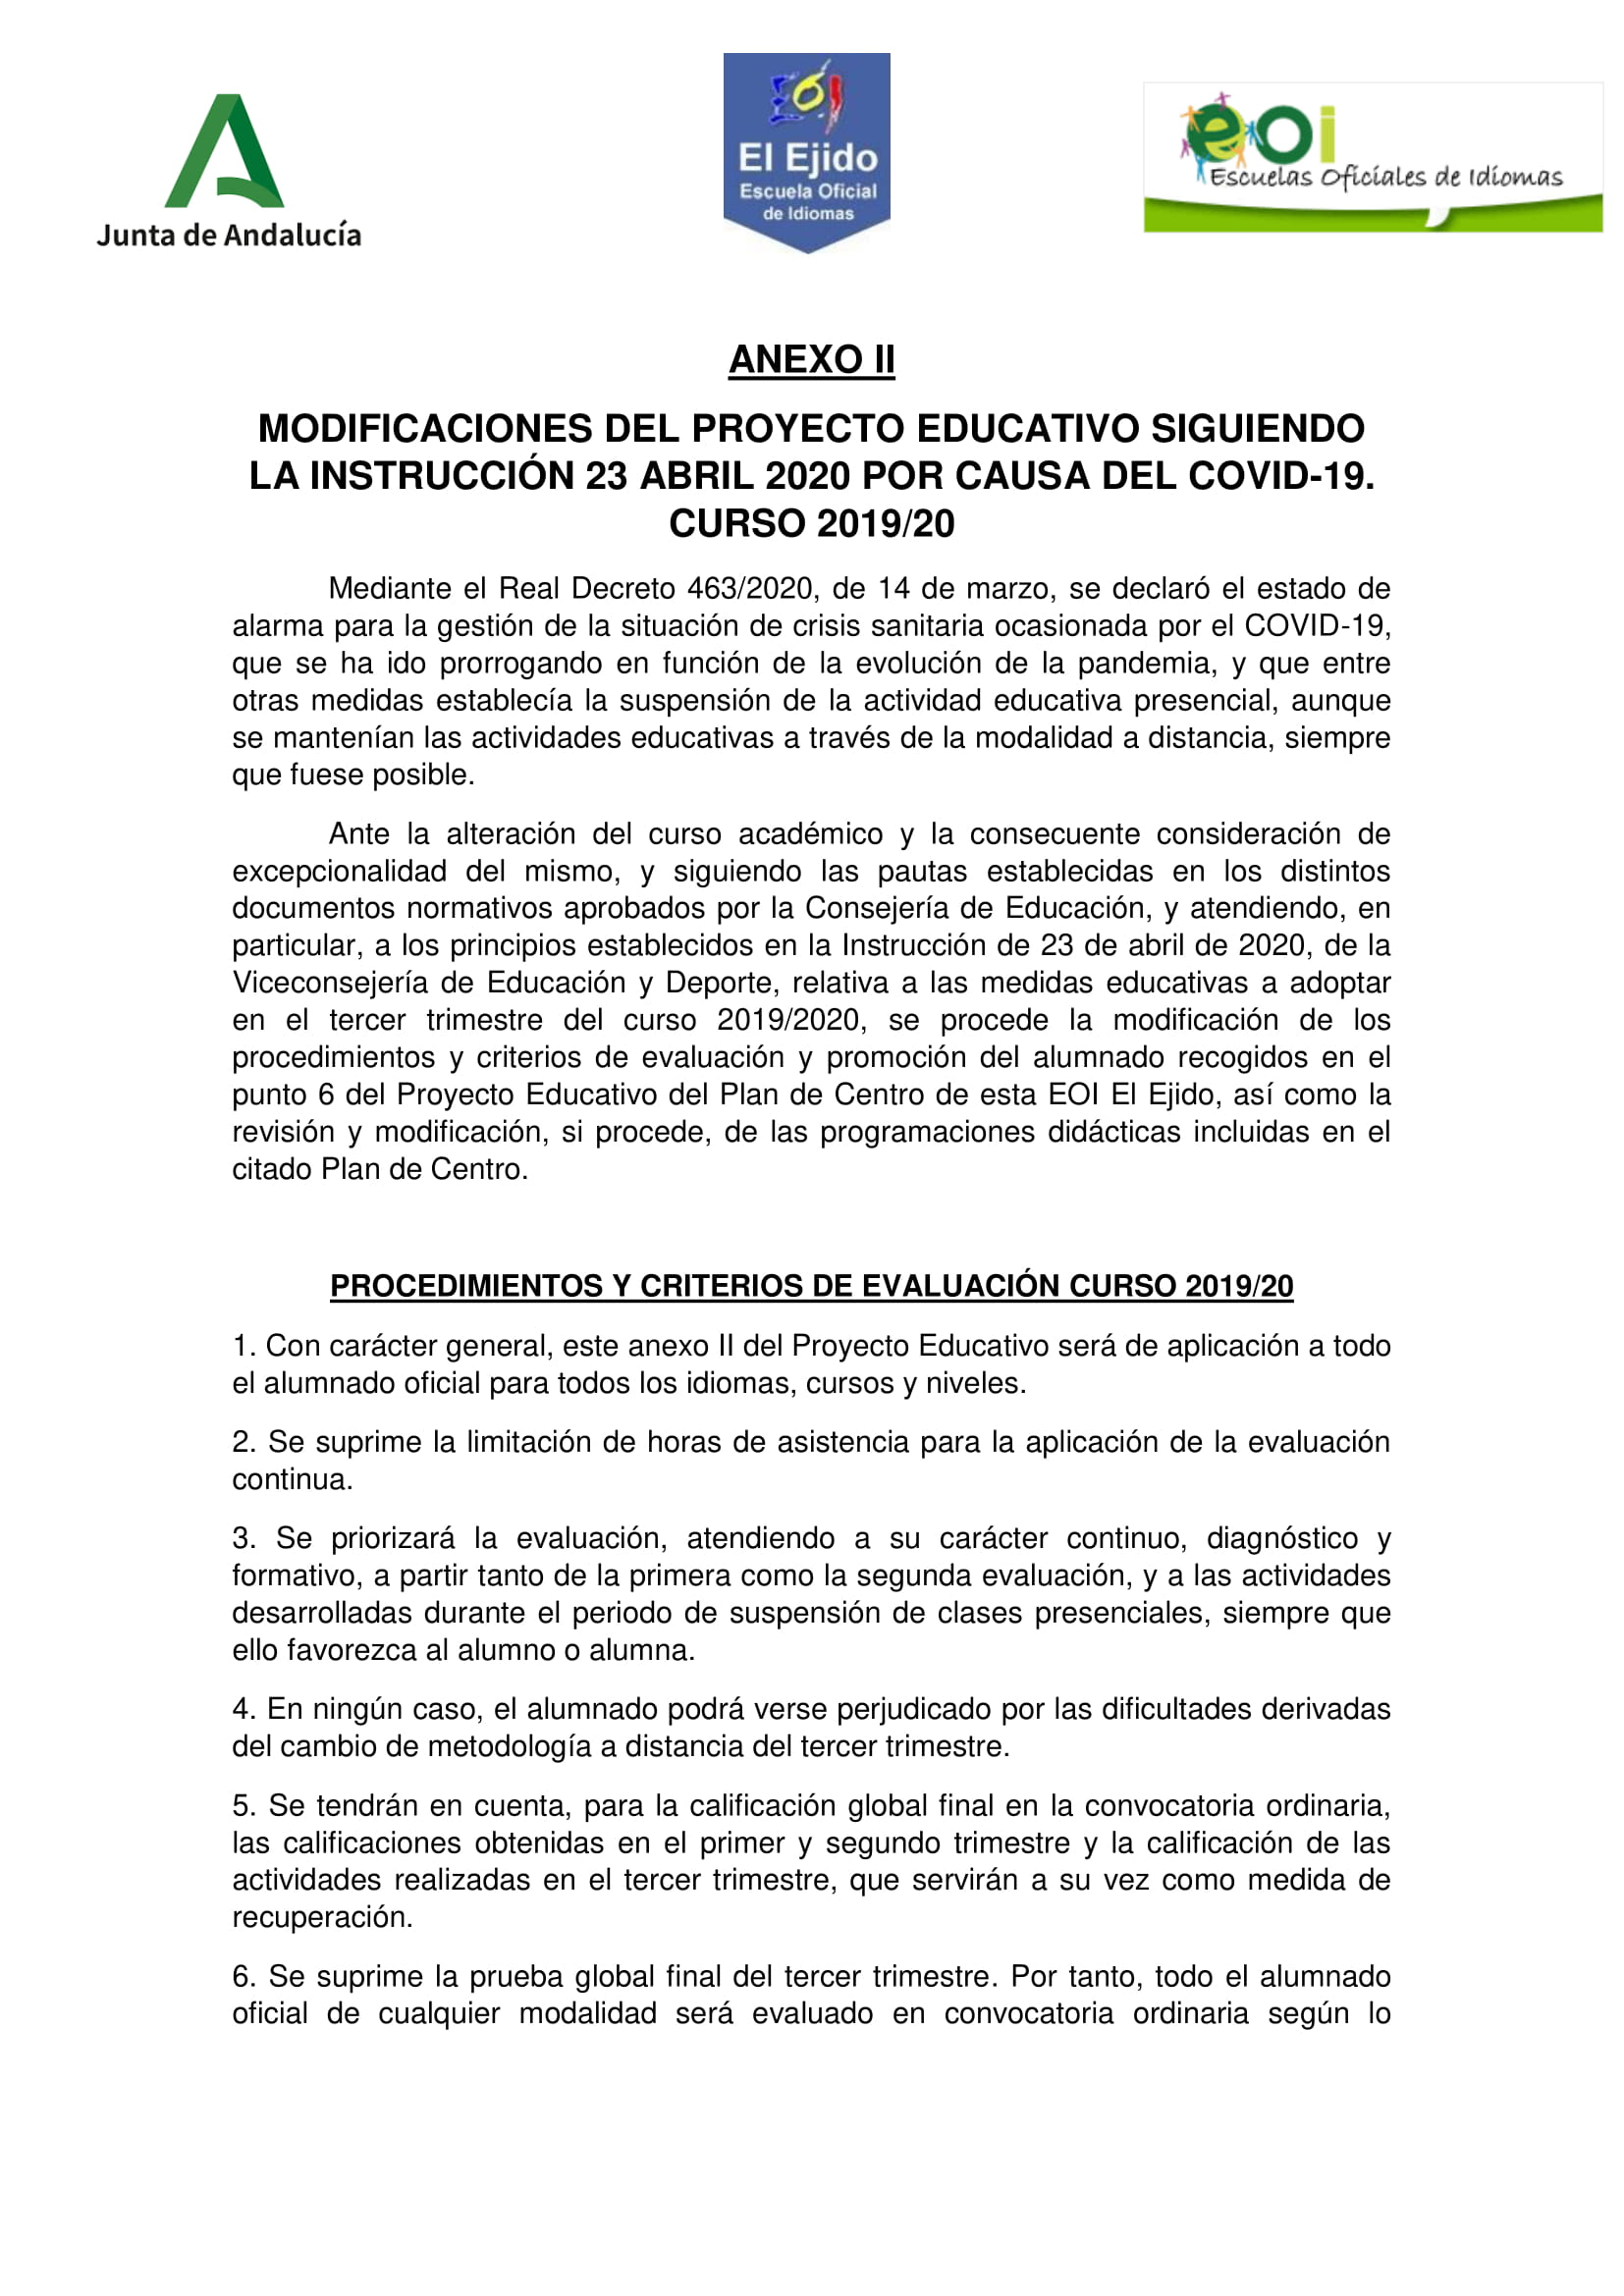 MODIFICACIONES AL PROYECTO EDUCATIVO CURSO 2019 20 1